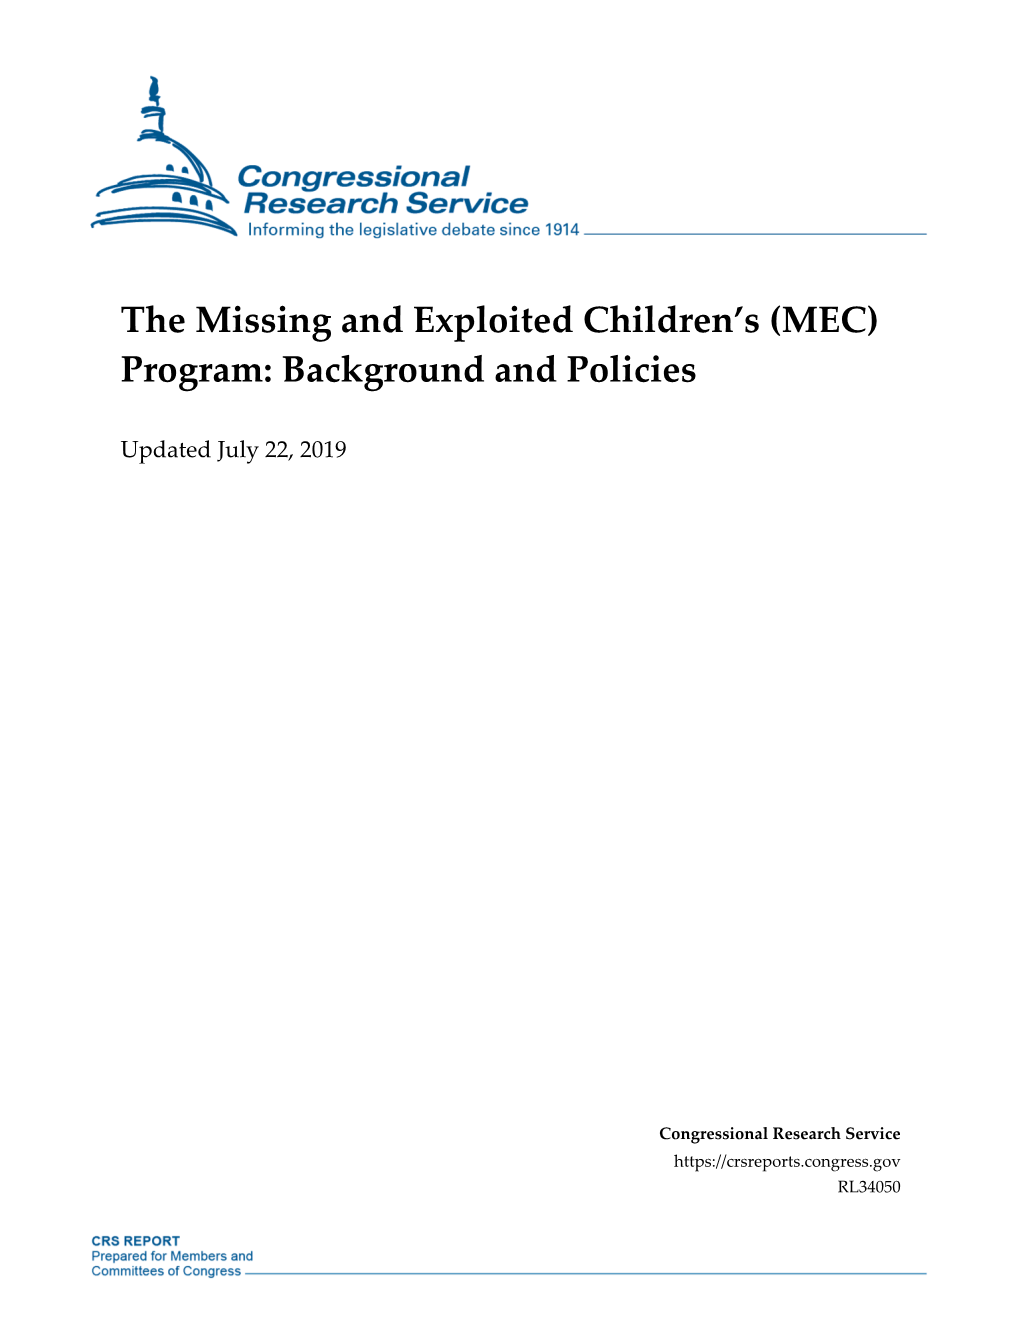 The Missing and Exploited Children's (MEC) Program